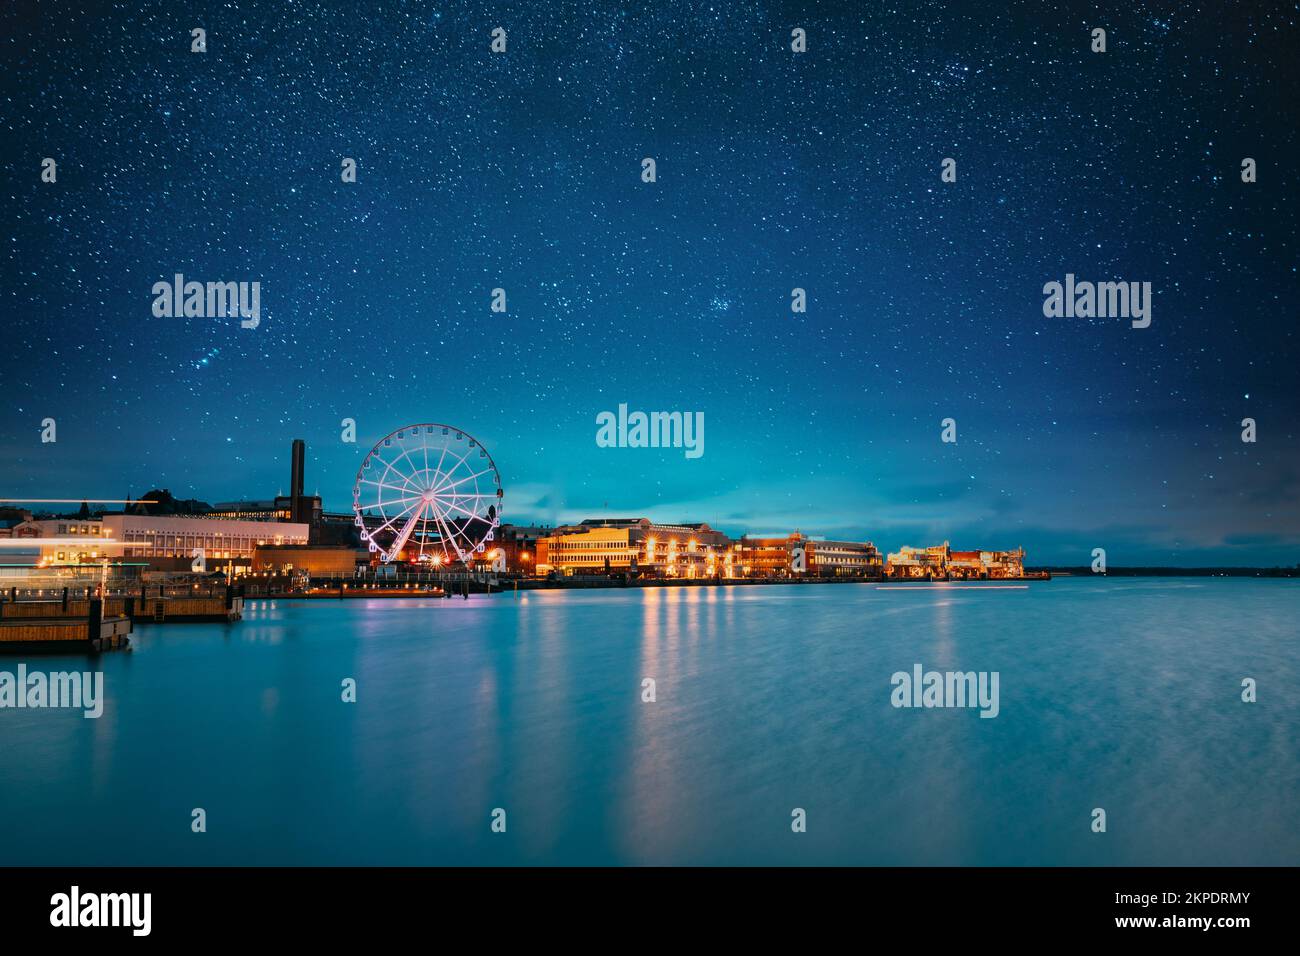 Helsinki, Finlande. Ciel étoilé bleu vif au-dessus de l'Embankment avec grande roue dans les illuminations nocturnes. Bleu clair ciel spectaculaire Banque D'Images